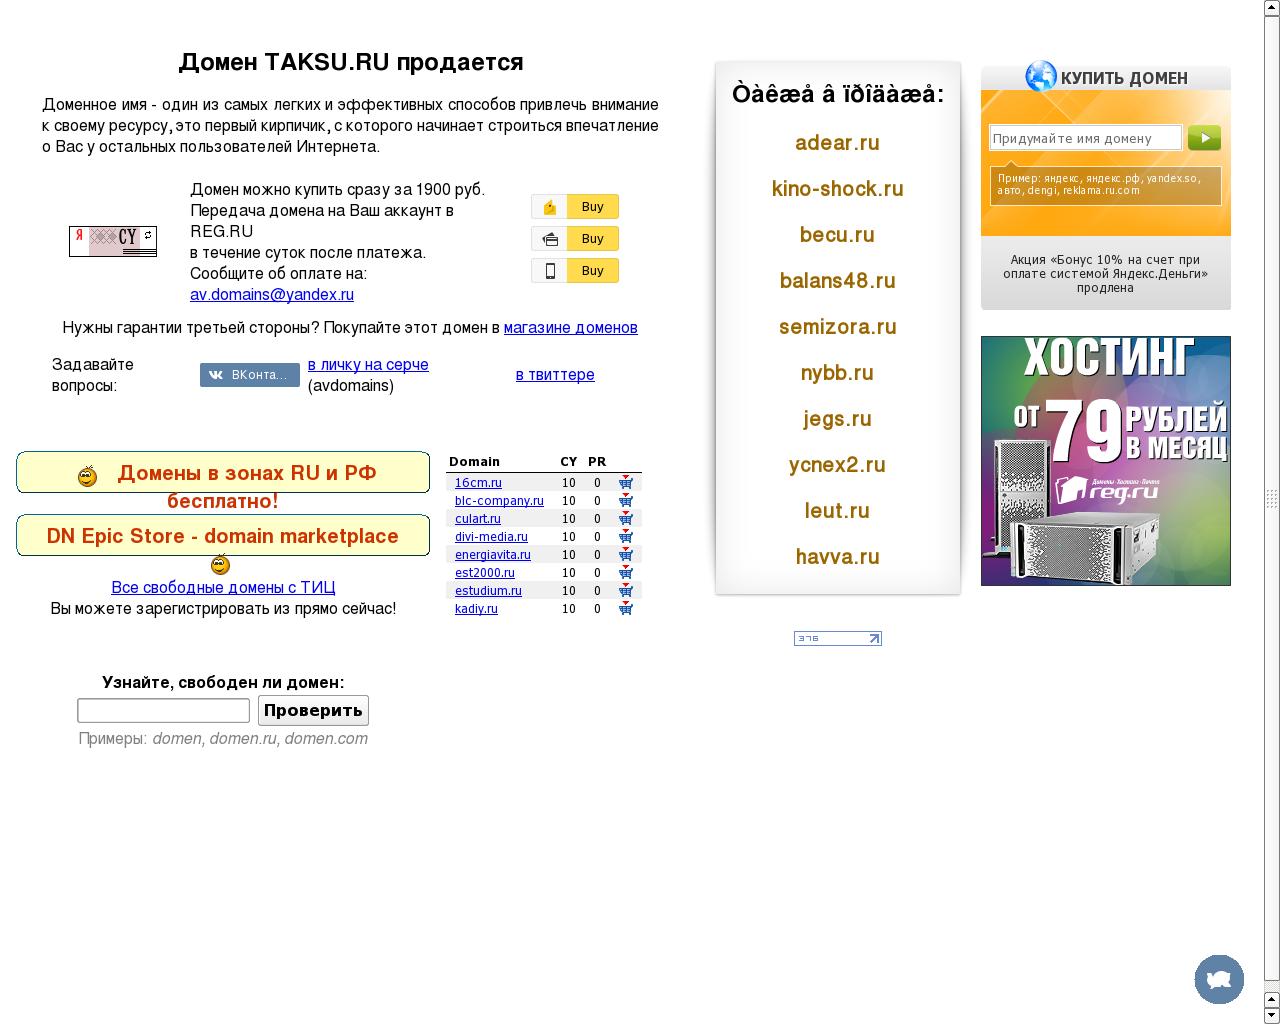 Изображение сайта taksu.ru в разрешении 1280x1024